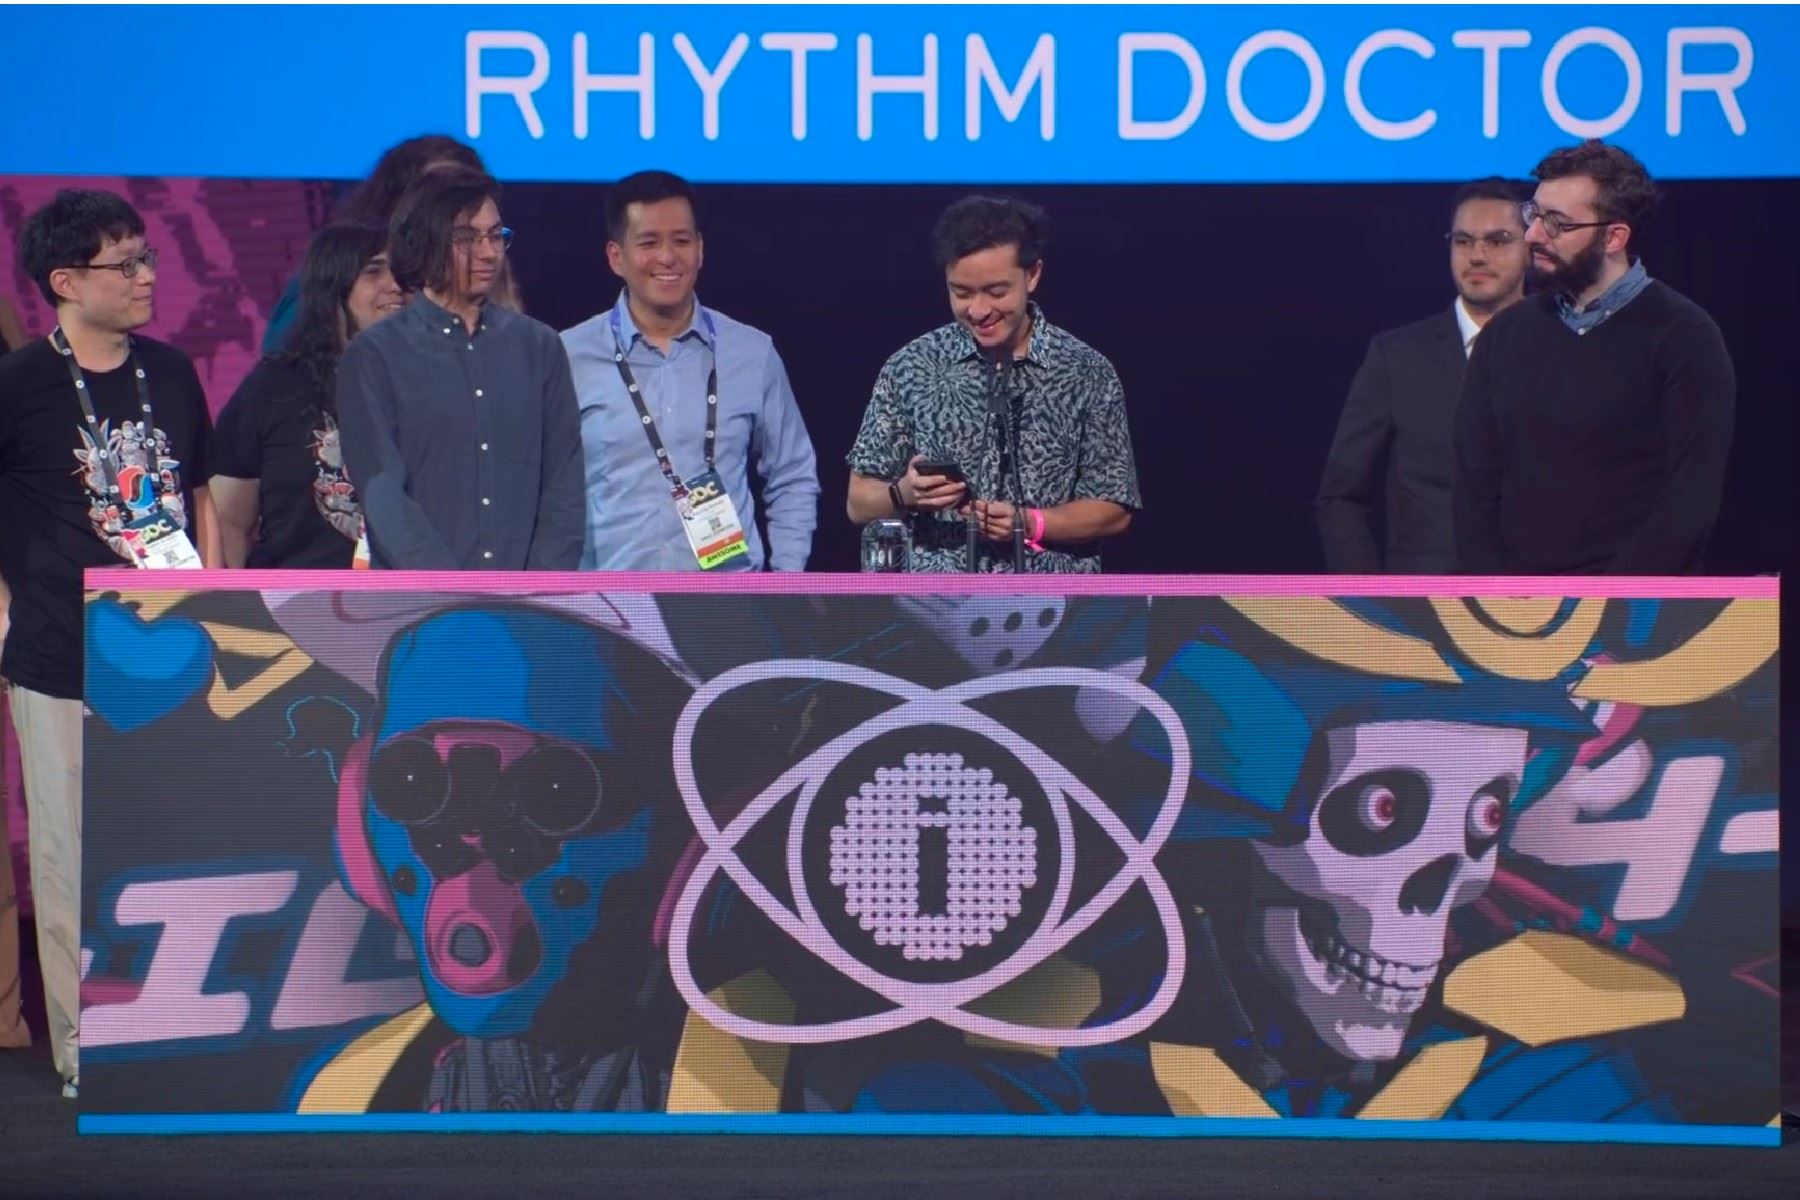 Rhythm Doctor, videojuego peruano, premiado en el Festival de Juegos Independientes